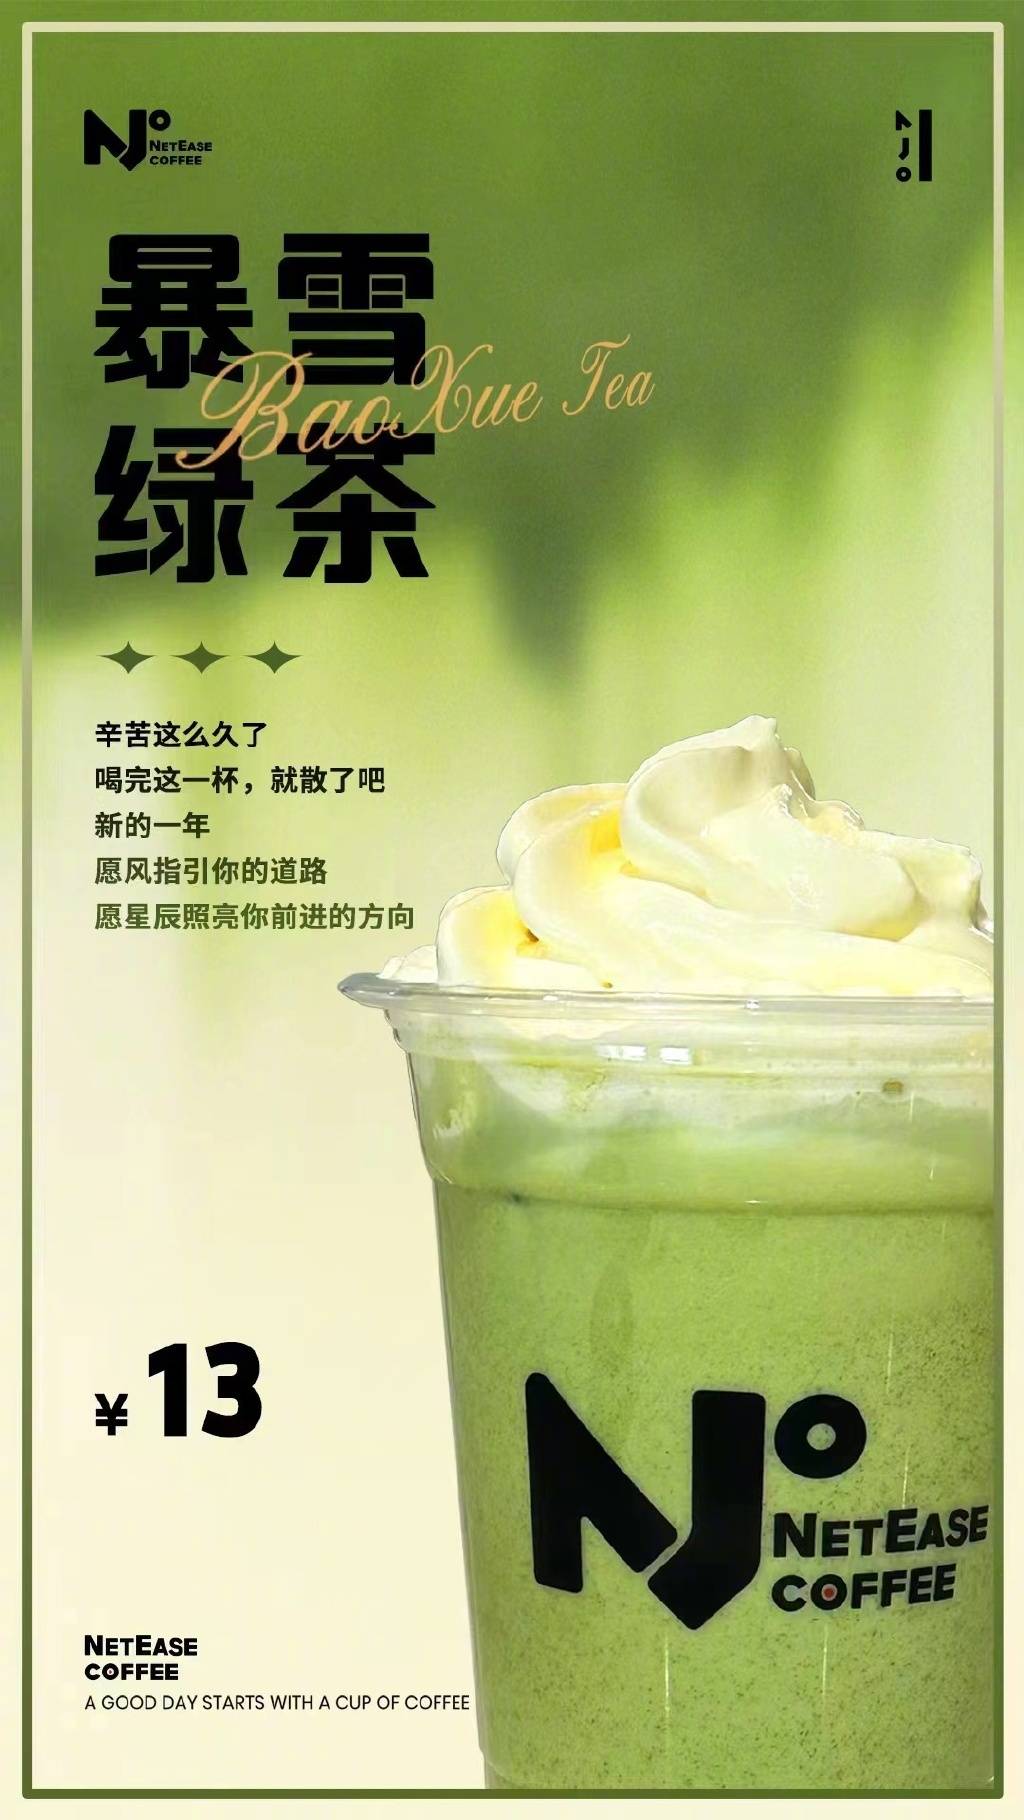 真的彻底撕破脸了！网易咖啡厅推出「暴雪绿茶」饮品，销量极好一杯难求！